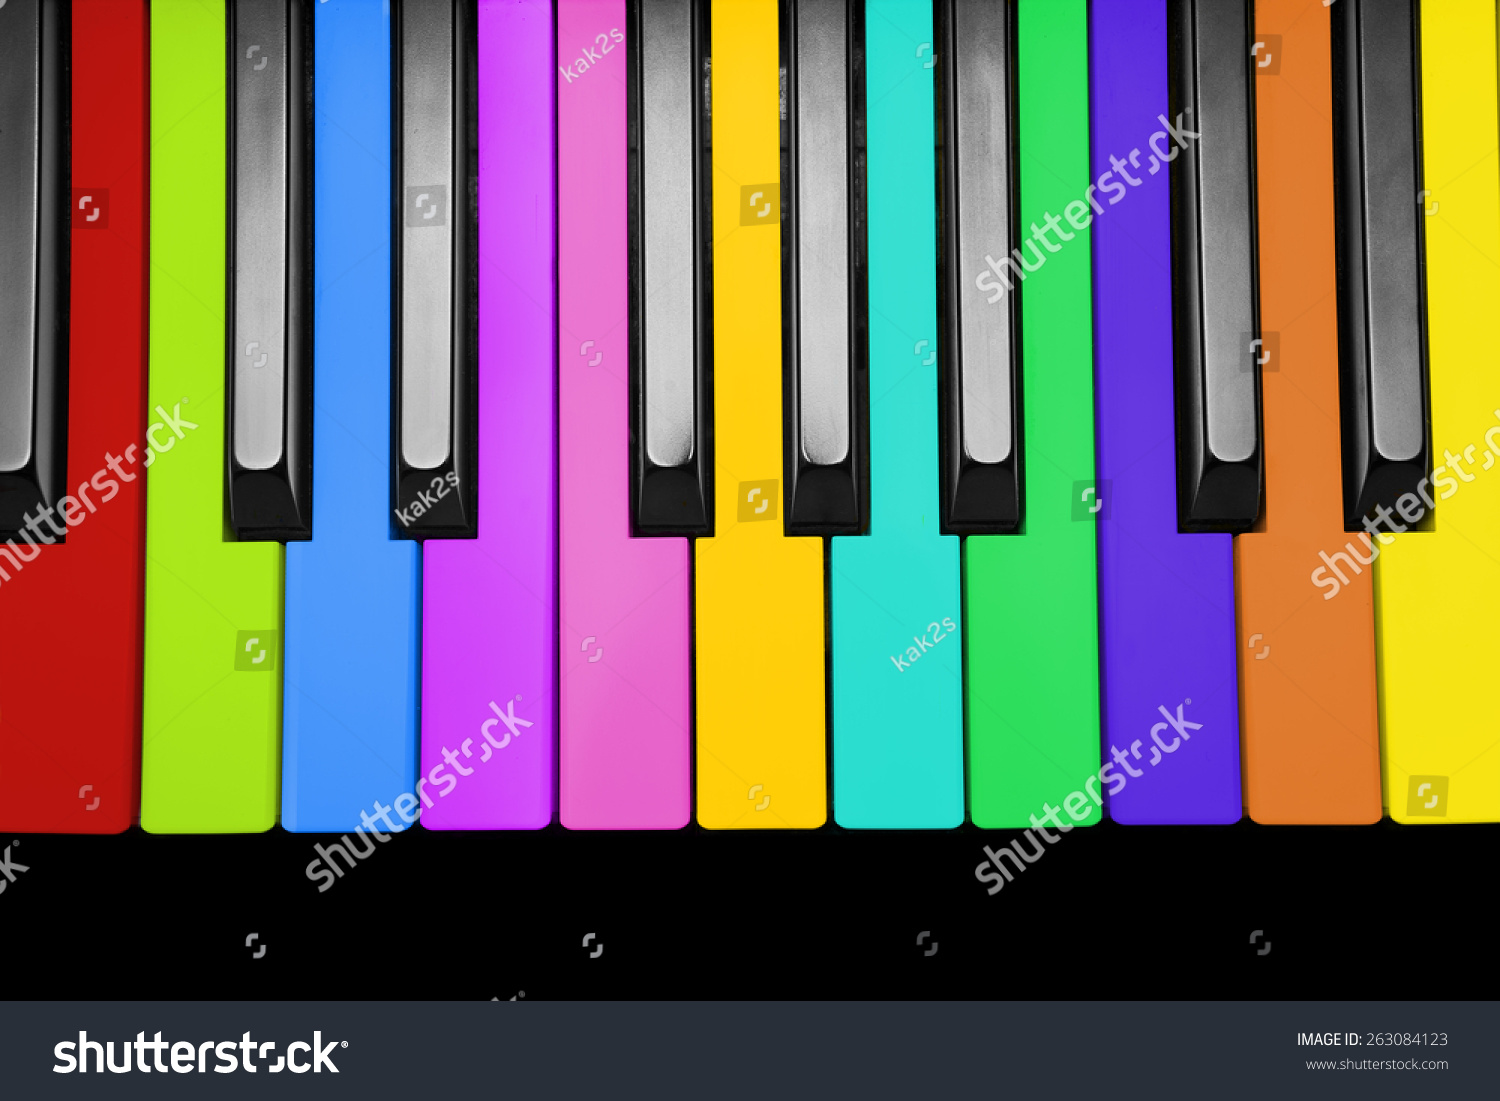 Rainbow Piano Keys Isolated On White Stock Photo 263084123 ...
 Rainbow Piano Backgrounds